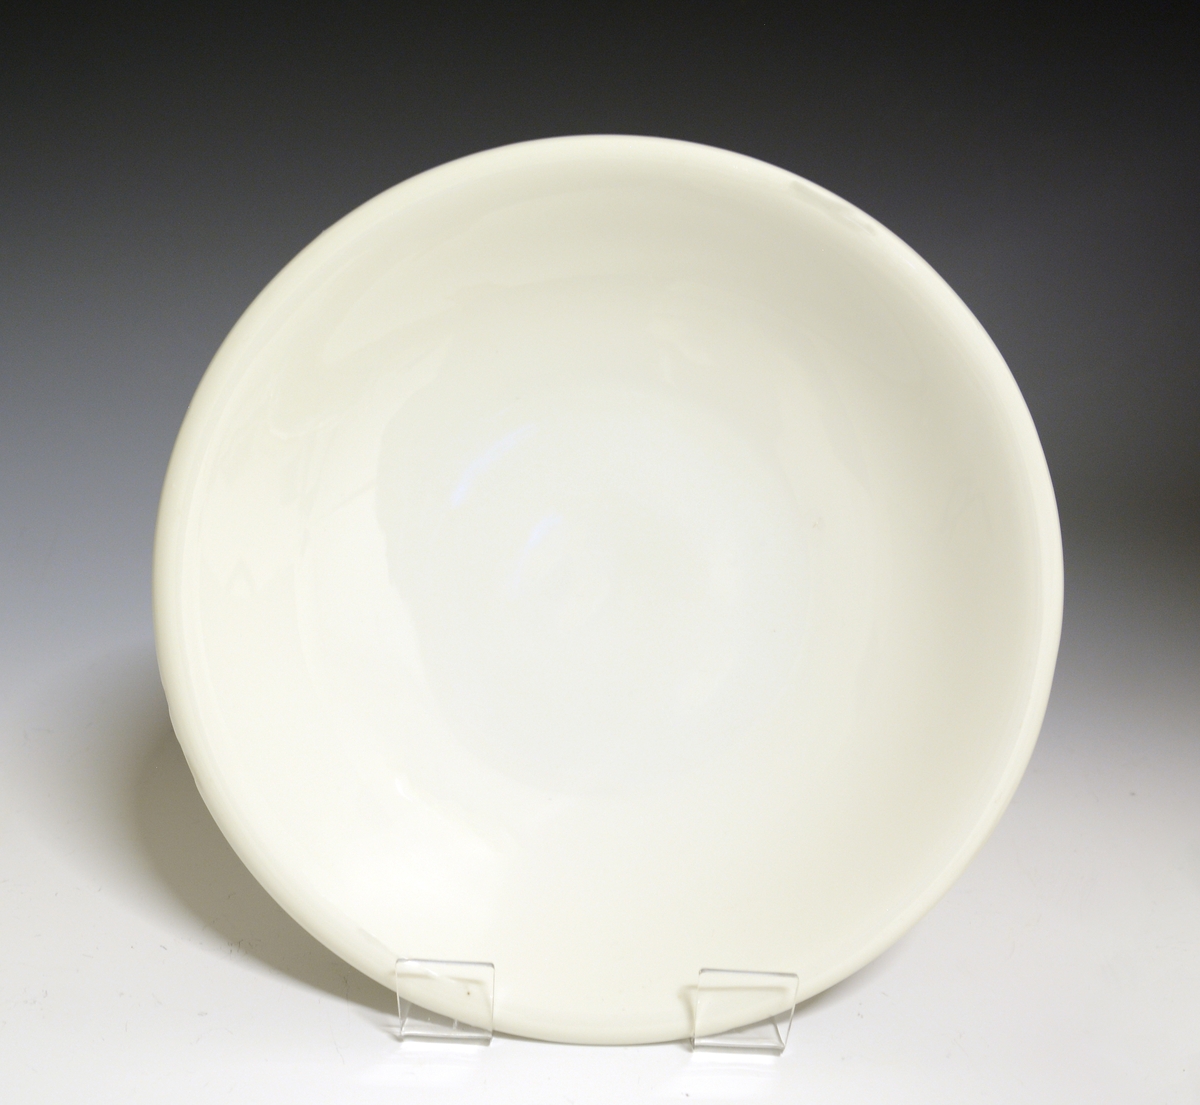 Prot: Litet fat av porselen, med glatt, nedbøyet kant. Hvit glasur. Tilhører servise 1847.